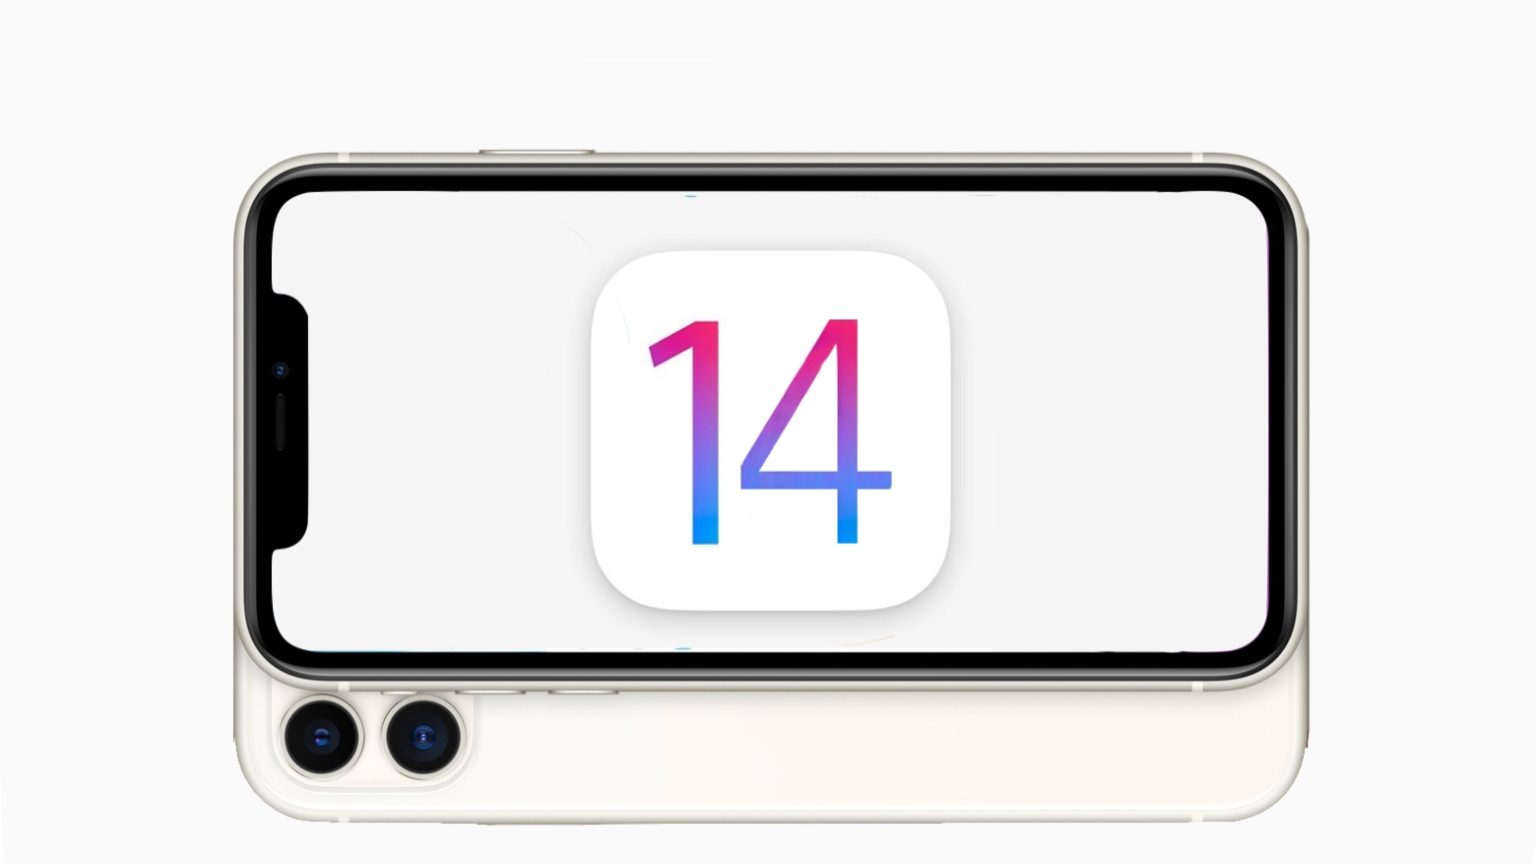 iOS 14 on an iPhone 11